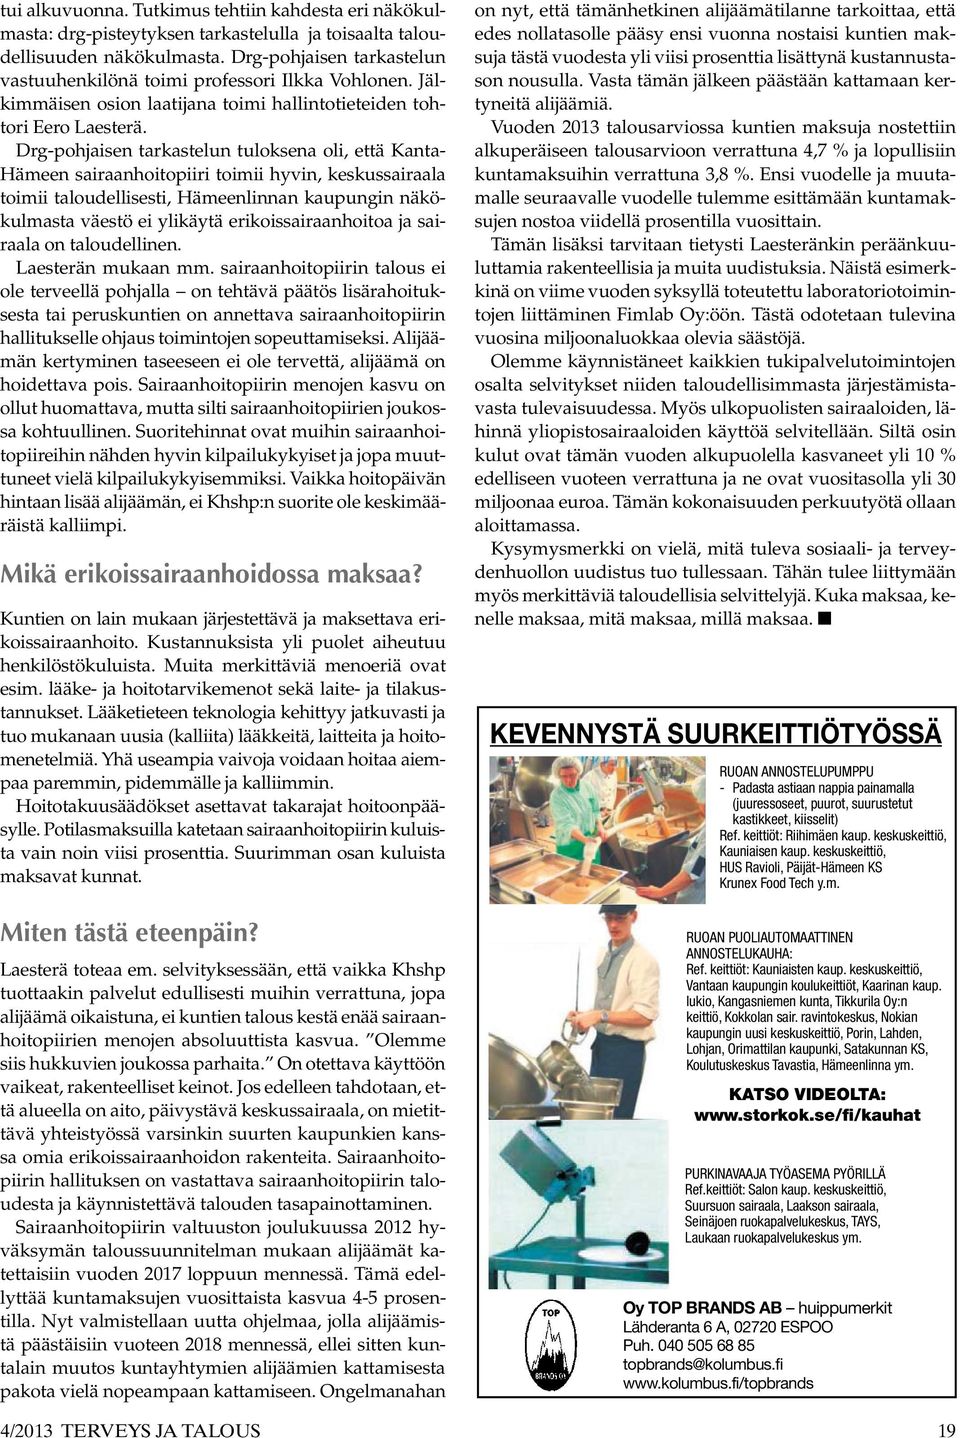 Drg-pohjaisen tarkastelun tuloksena oli, että Kanta- Hämeen sairaanhoitopiiri toimii hyvin, keskussairaala toimii taloudellisesti, Hämeenlinnan kaupungin näkökulmasta väestö ei ylikäytä